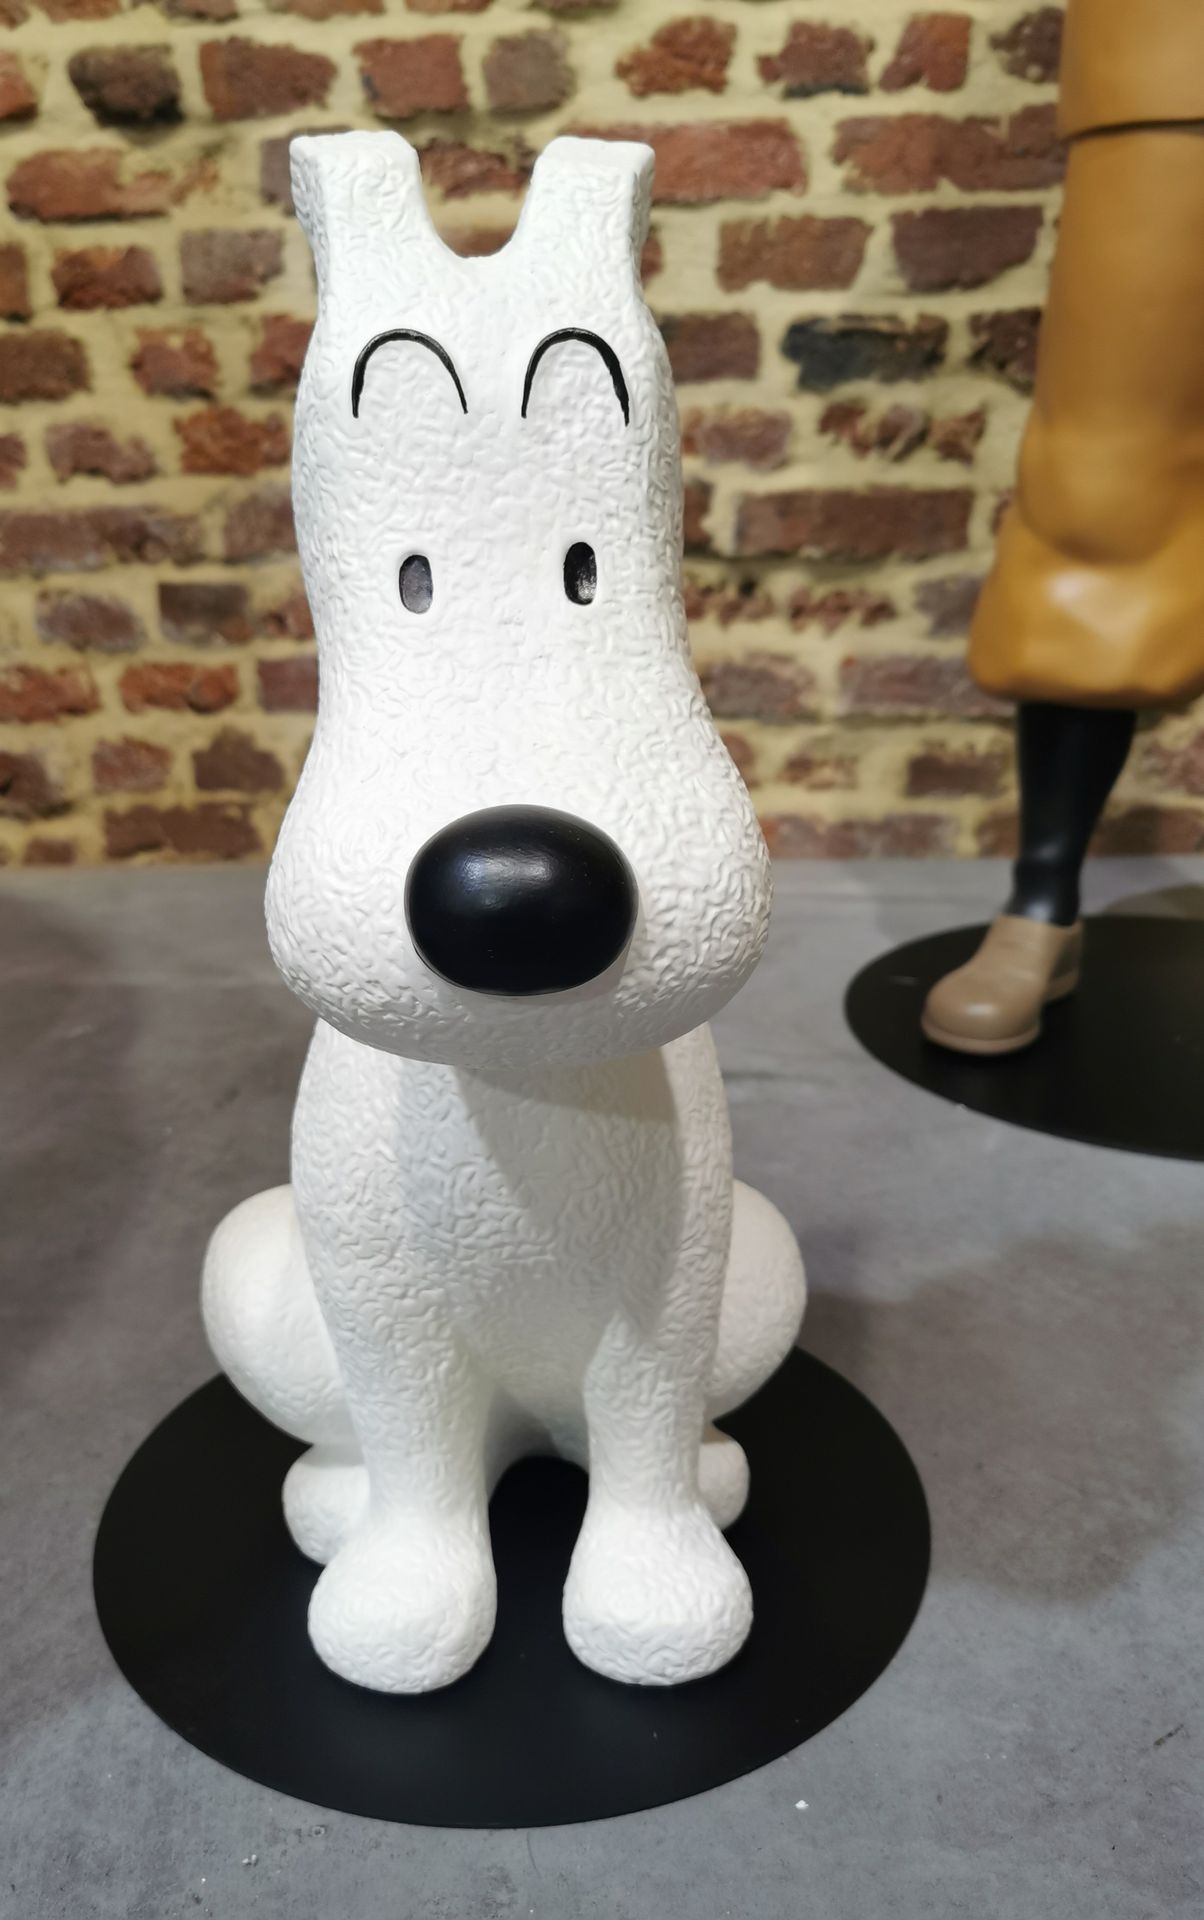 Tintin & Hergé Bobby (Moulinsart). Ein unverzichtbarer Bobby von Moulinsart, der&hellip;